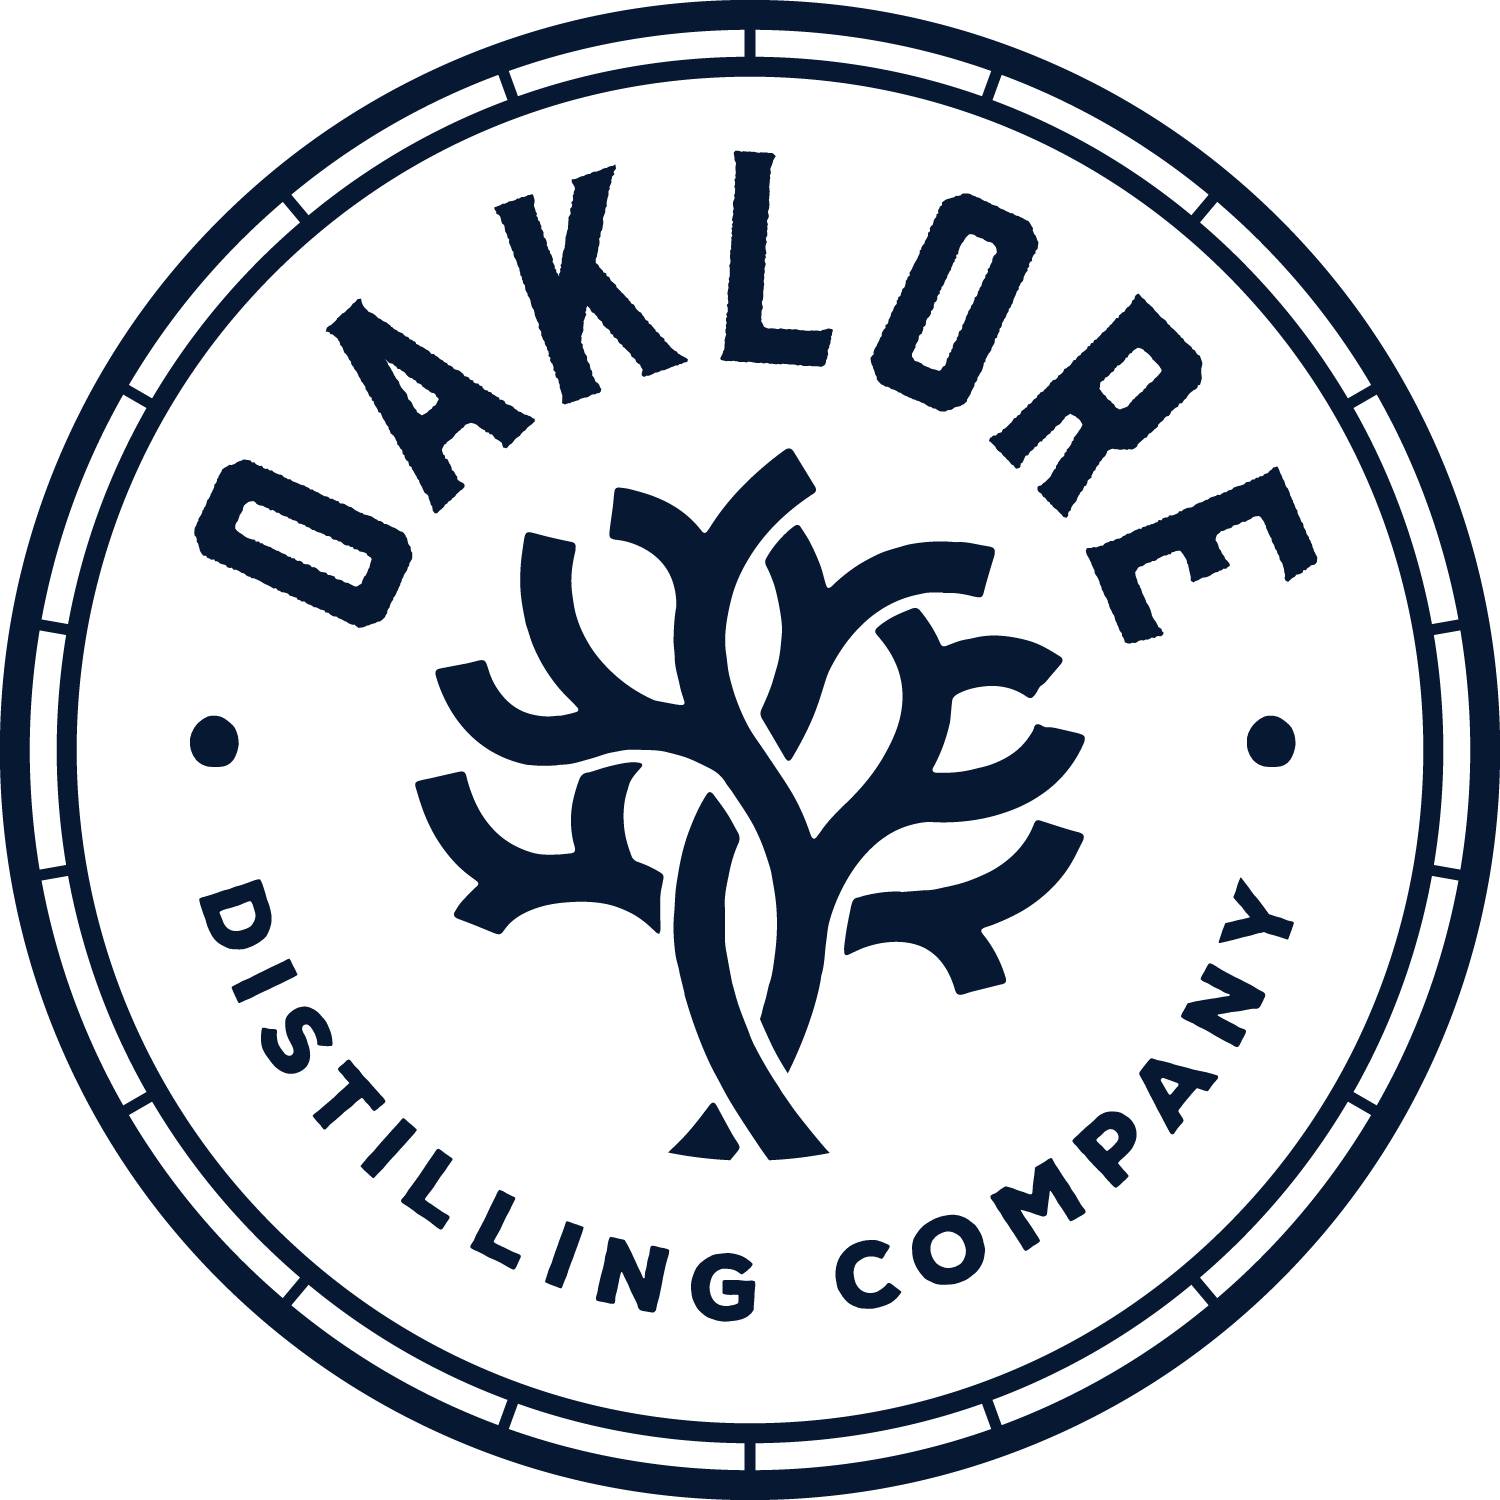 Oaklore Distilling